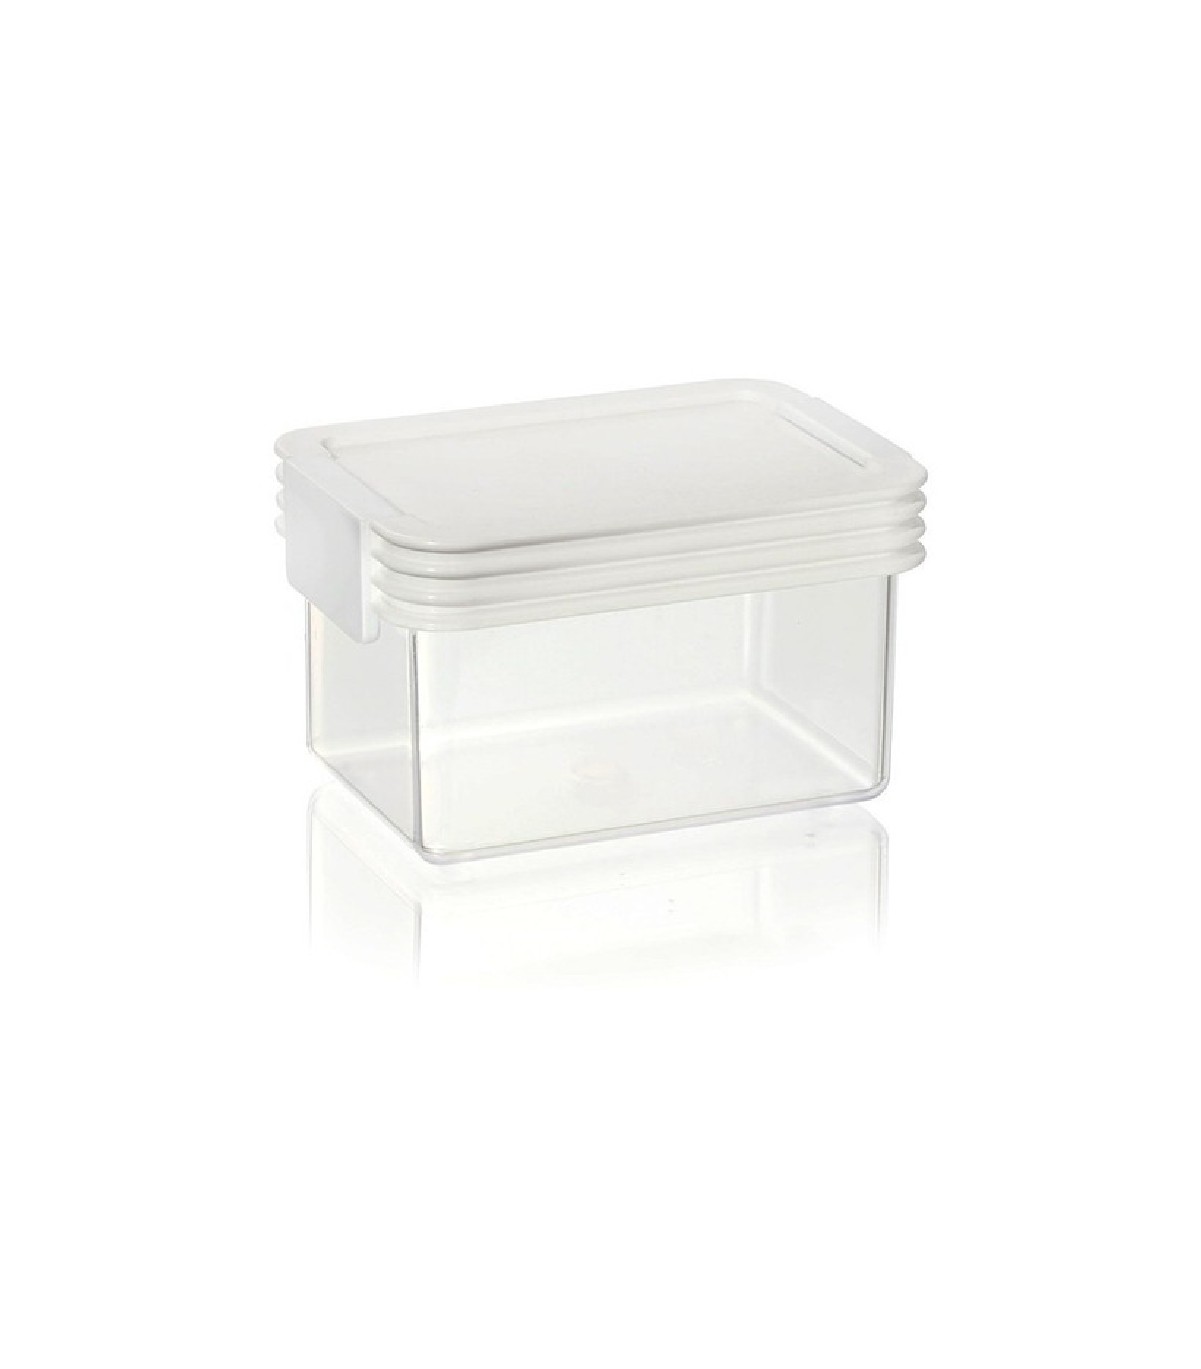 Caja Organizadora Plastica Transparente de 6 Litros Apilable con Trabas y  Manijas.